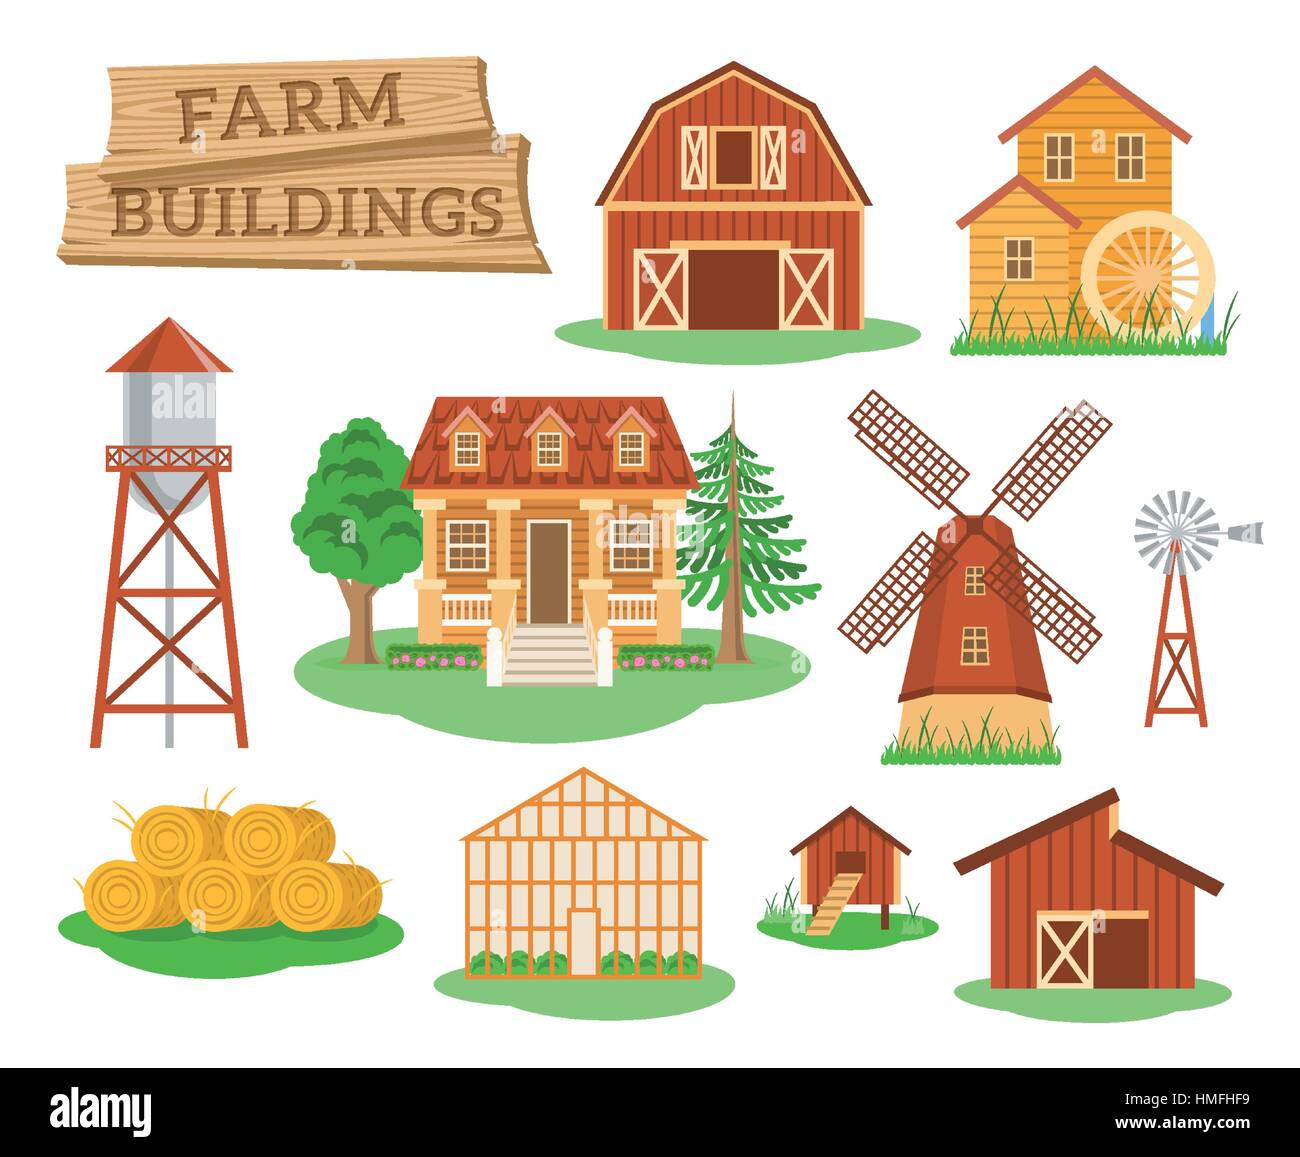 Bauernhof Gebäude und Konstruktionen flache Infografik Vektorelemente festgelegt. Ikonen der Bauernhaus, Scheune, Windmühle, Wassermühle, Gewächshaus, Wasser usw. Turm. Stock Vektor